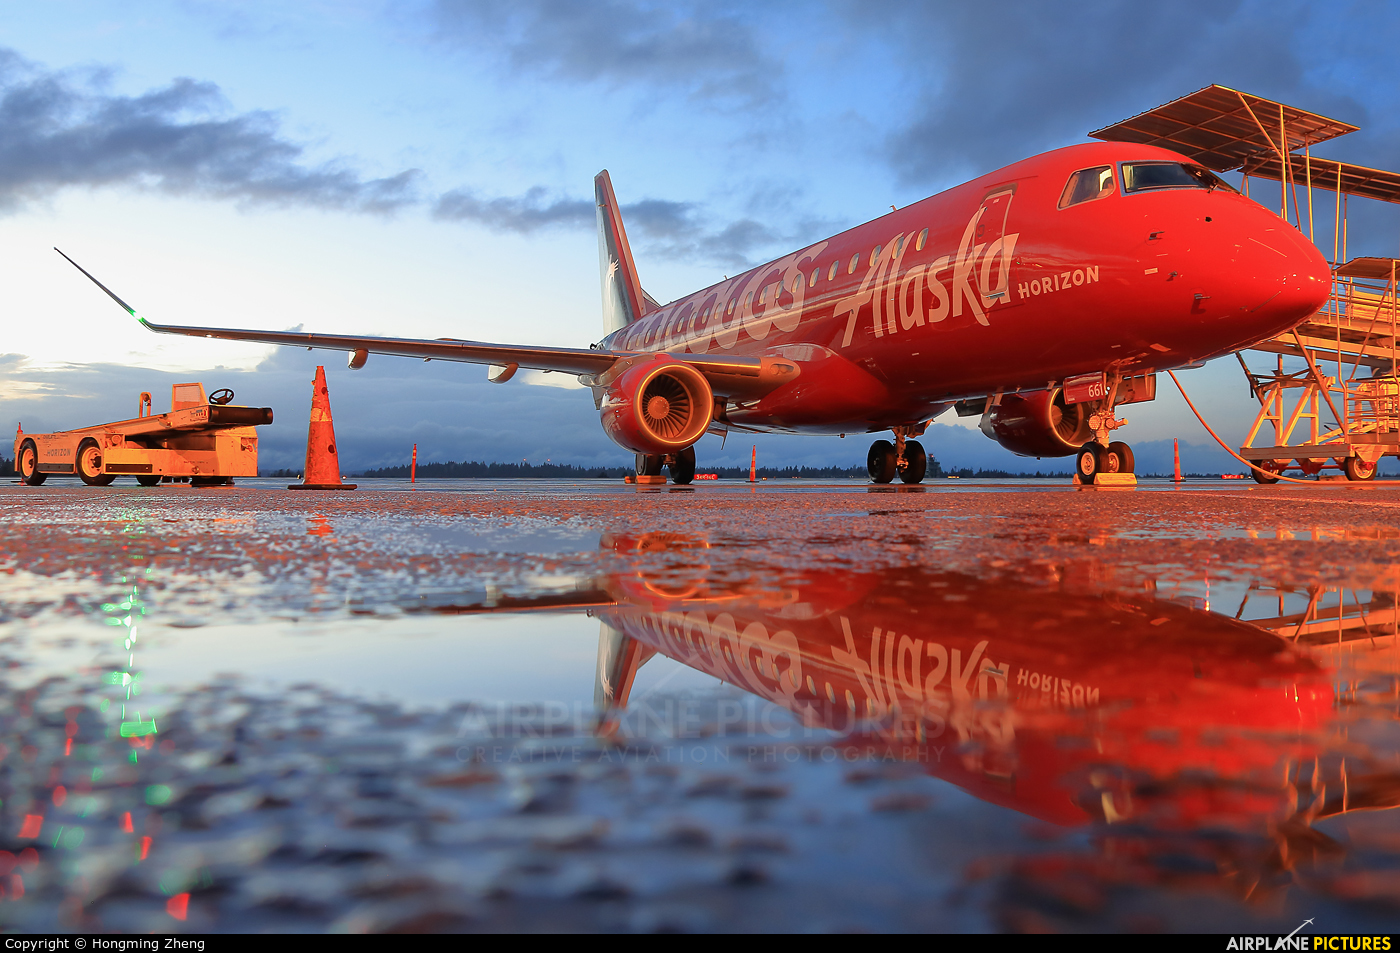 Alaska Airlines - Horizon Air N661QX aircraft at Seattle-Tacoma Intl